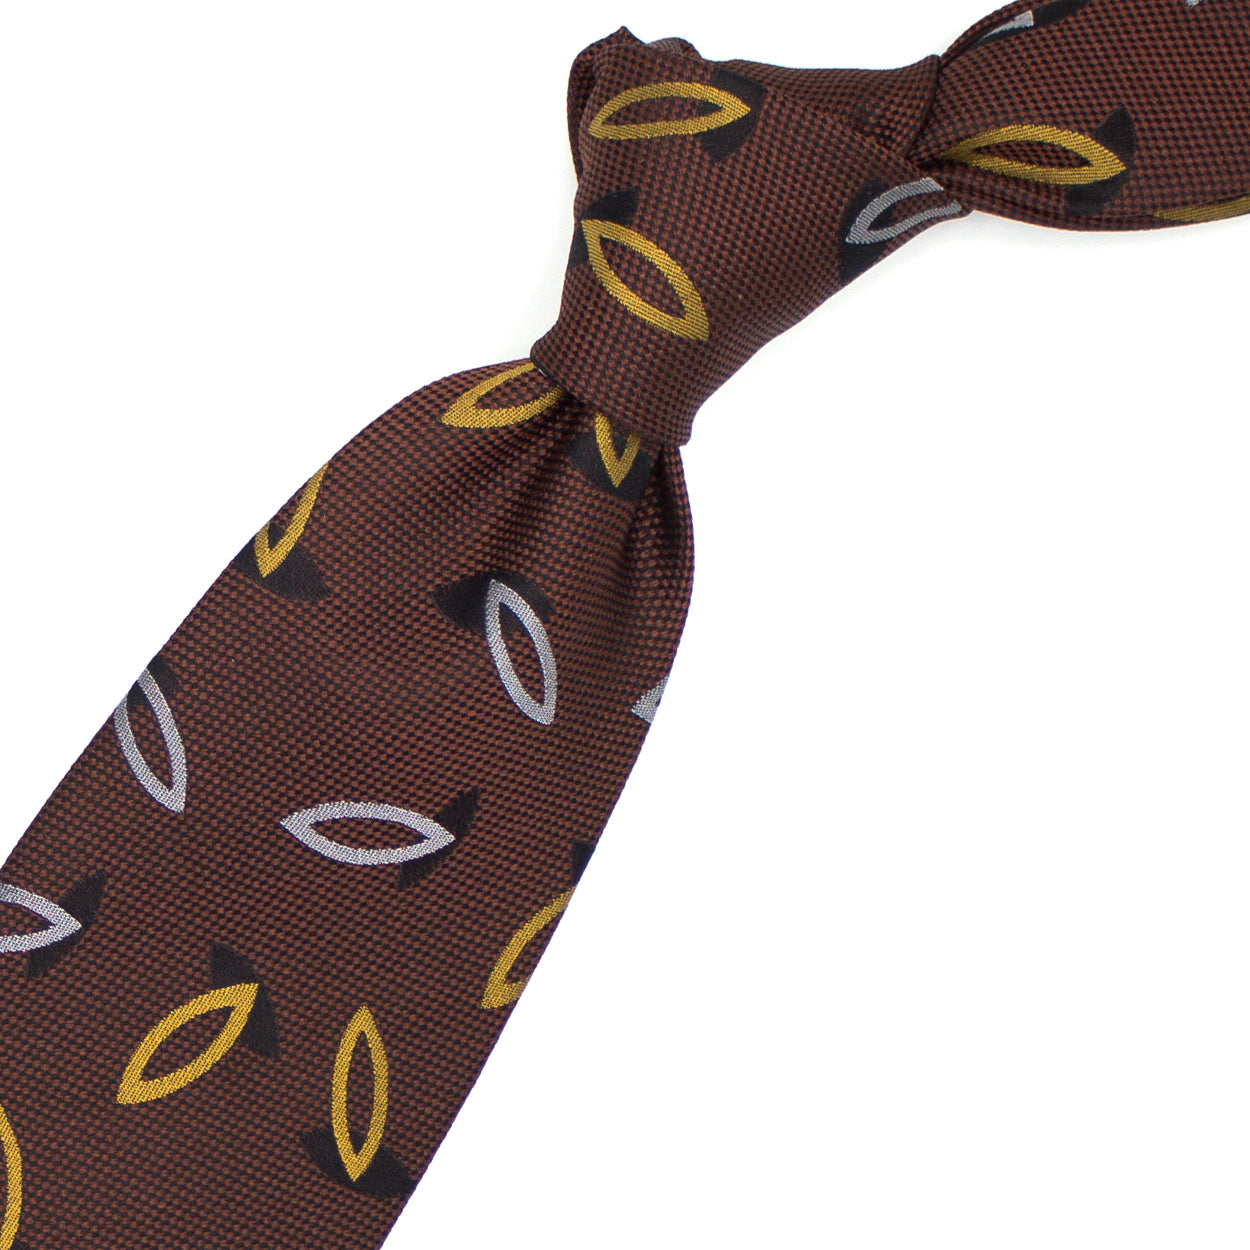 Cravatta ruggine con disegni grigi, gialli e neri